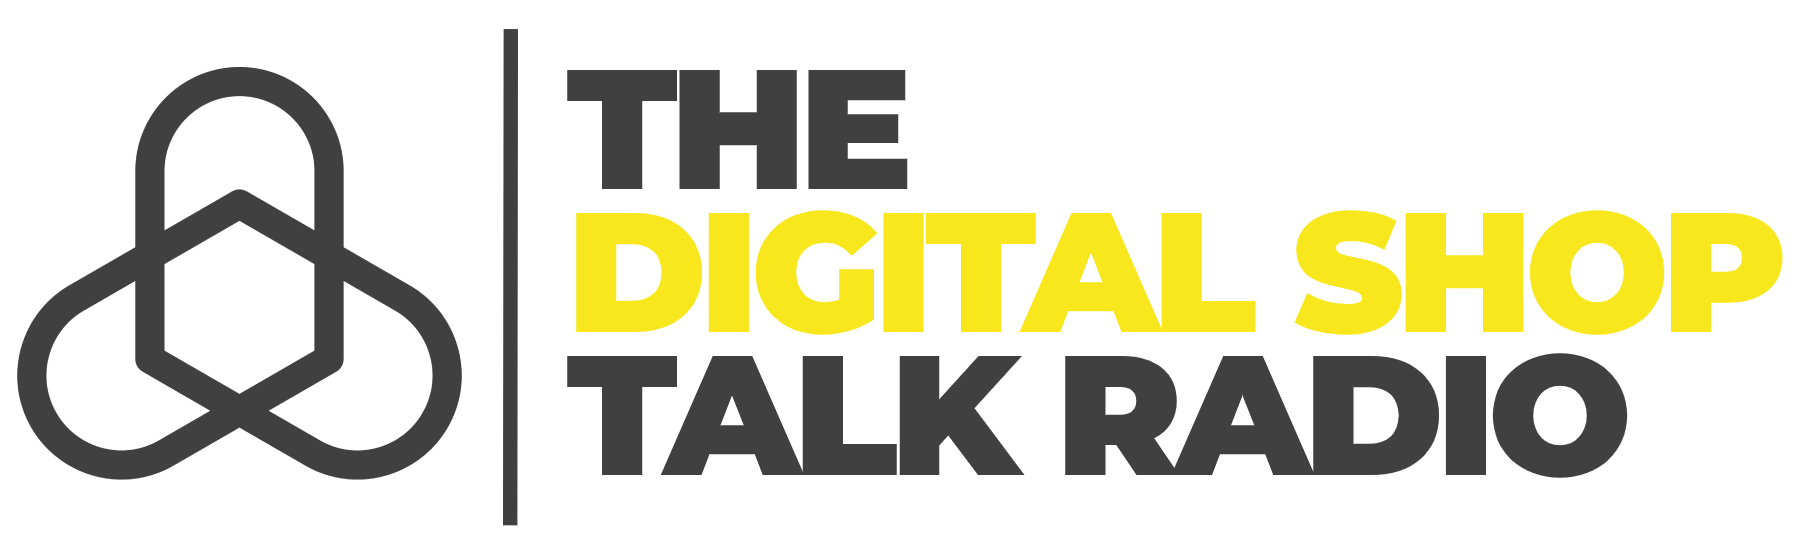 The Digital Shop Talk Radio Logo.